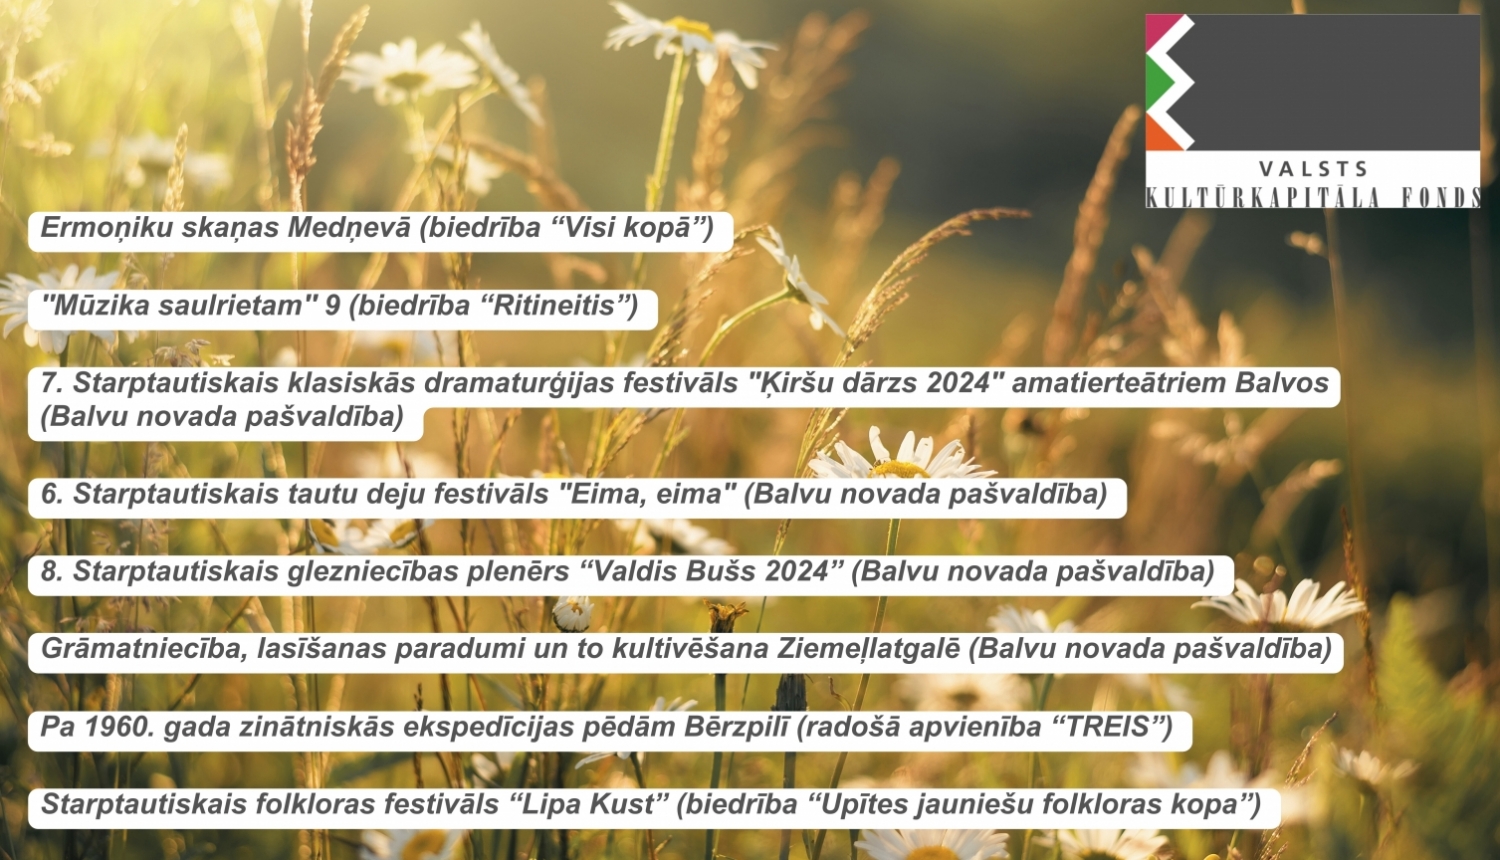 Atbalstīti vairāki Latgales kultūras programmas 2024 projekti no Balvu novada